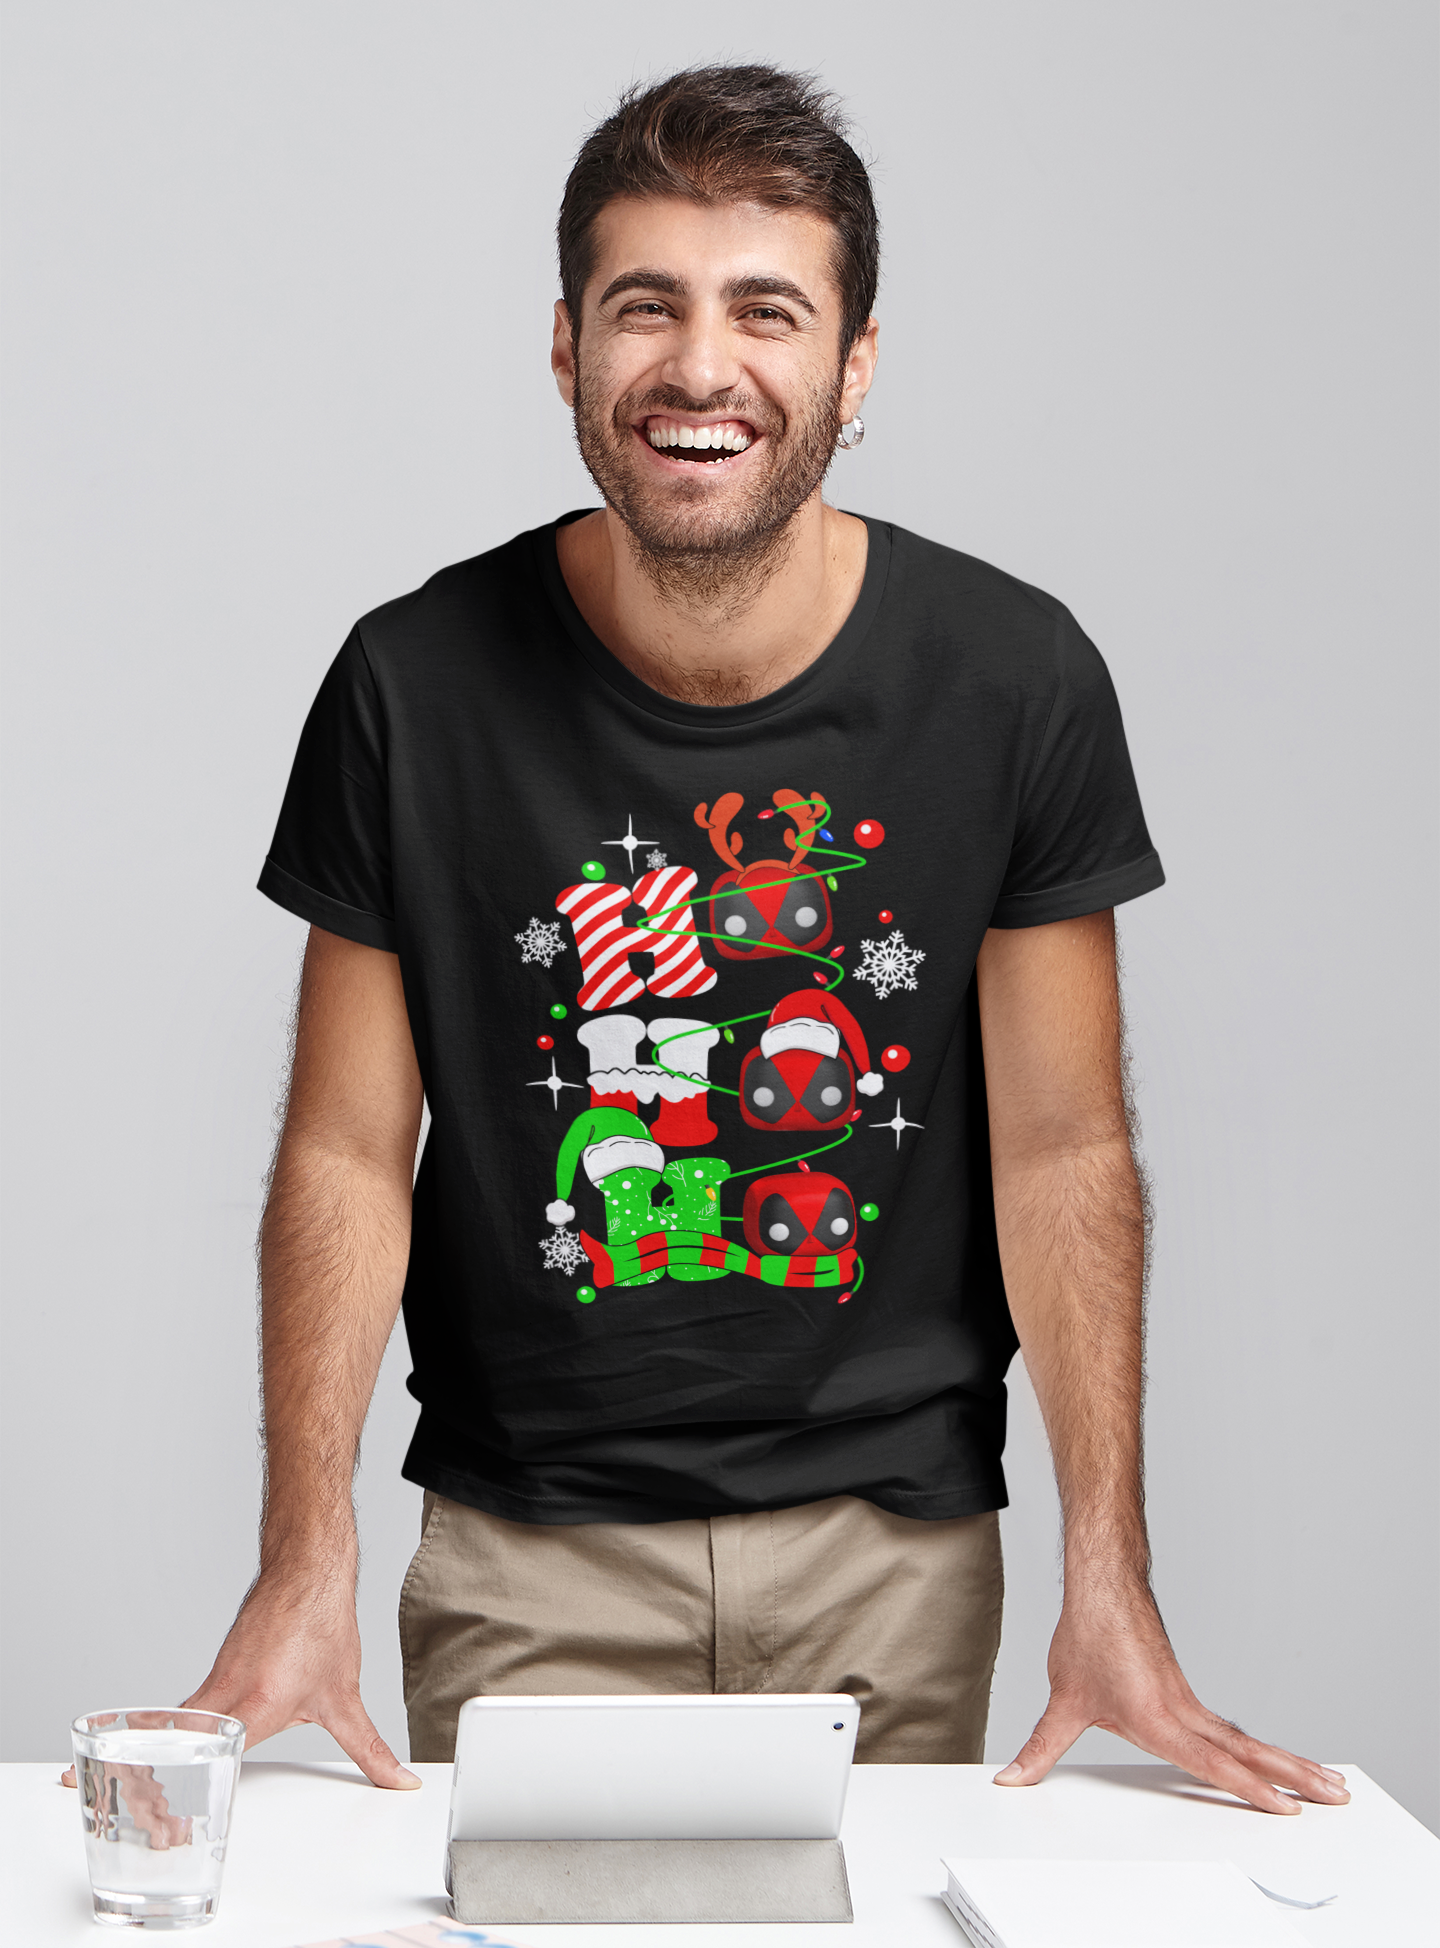 Deadpool T Shirt, Superhero Deadpool T Shirt, Ho Ho Ho Tshirt, Christmas Gifts